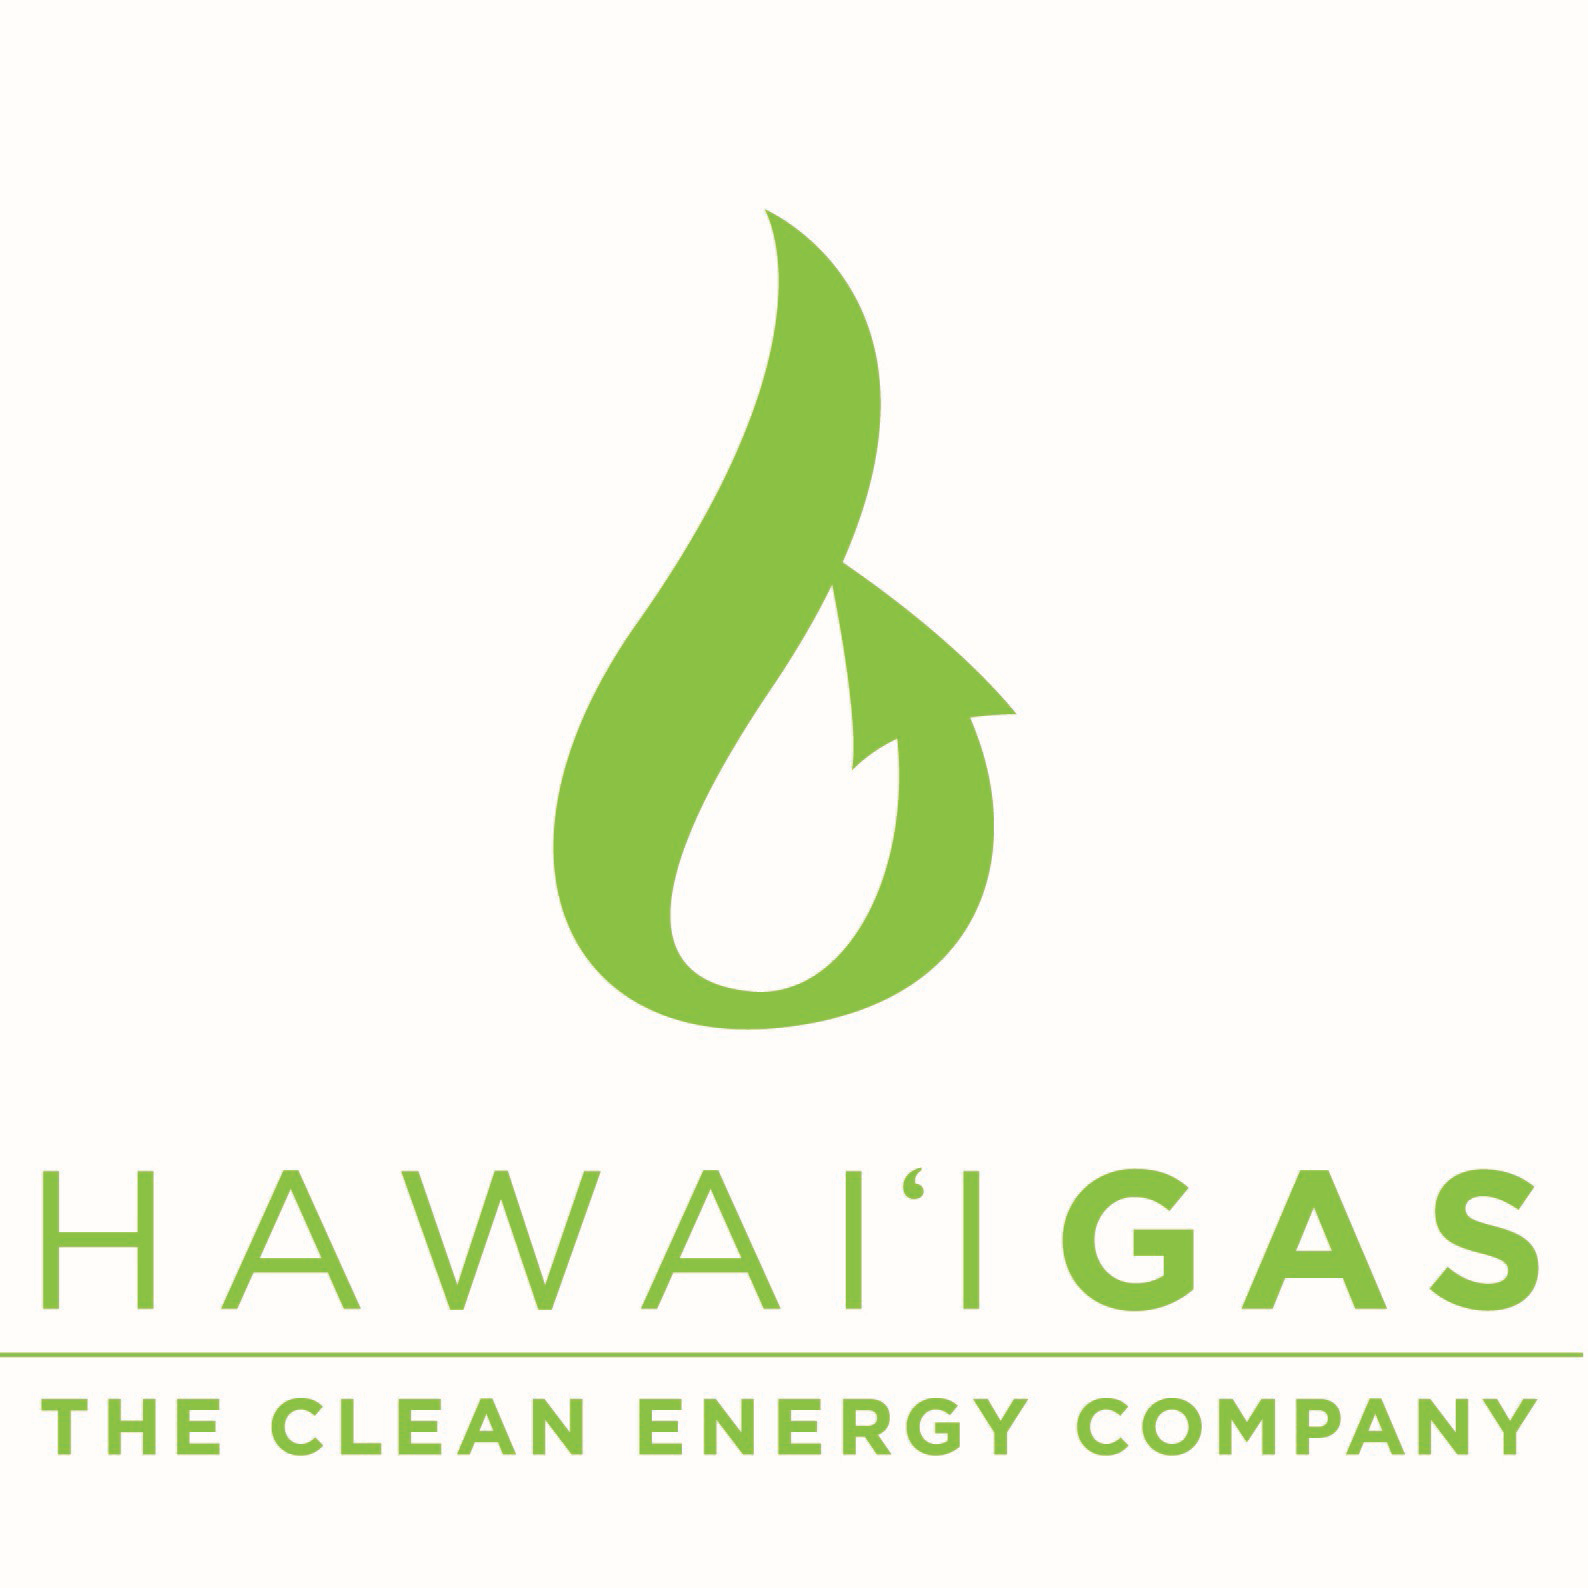 HRA Member HAWAII GAS Begins Renewable Energy Project